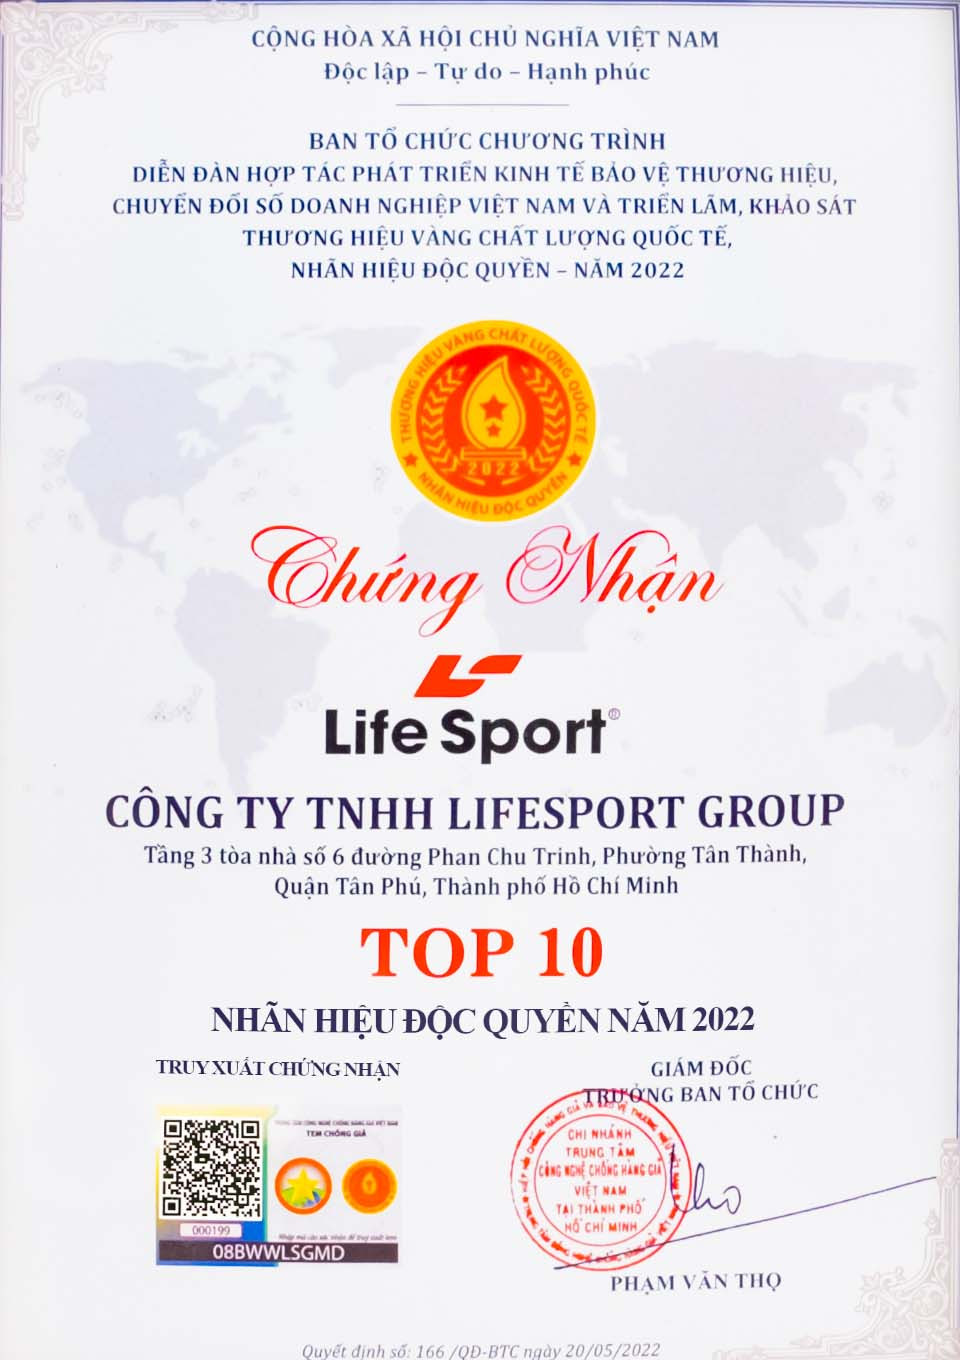 chung nhan lifesport top 10